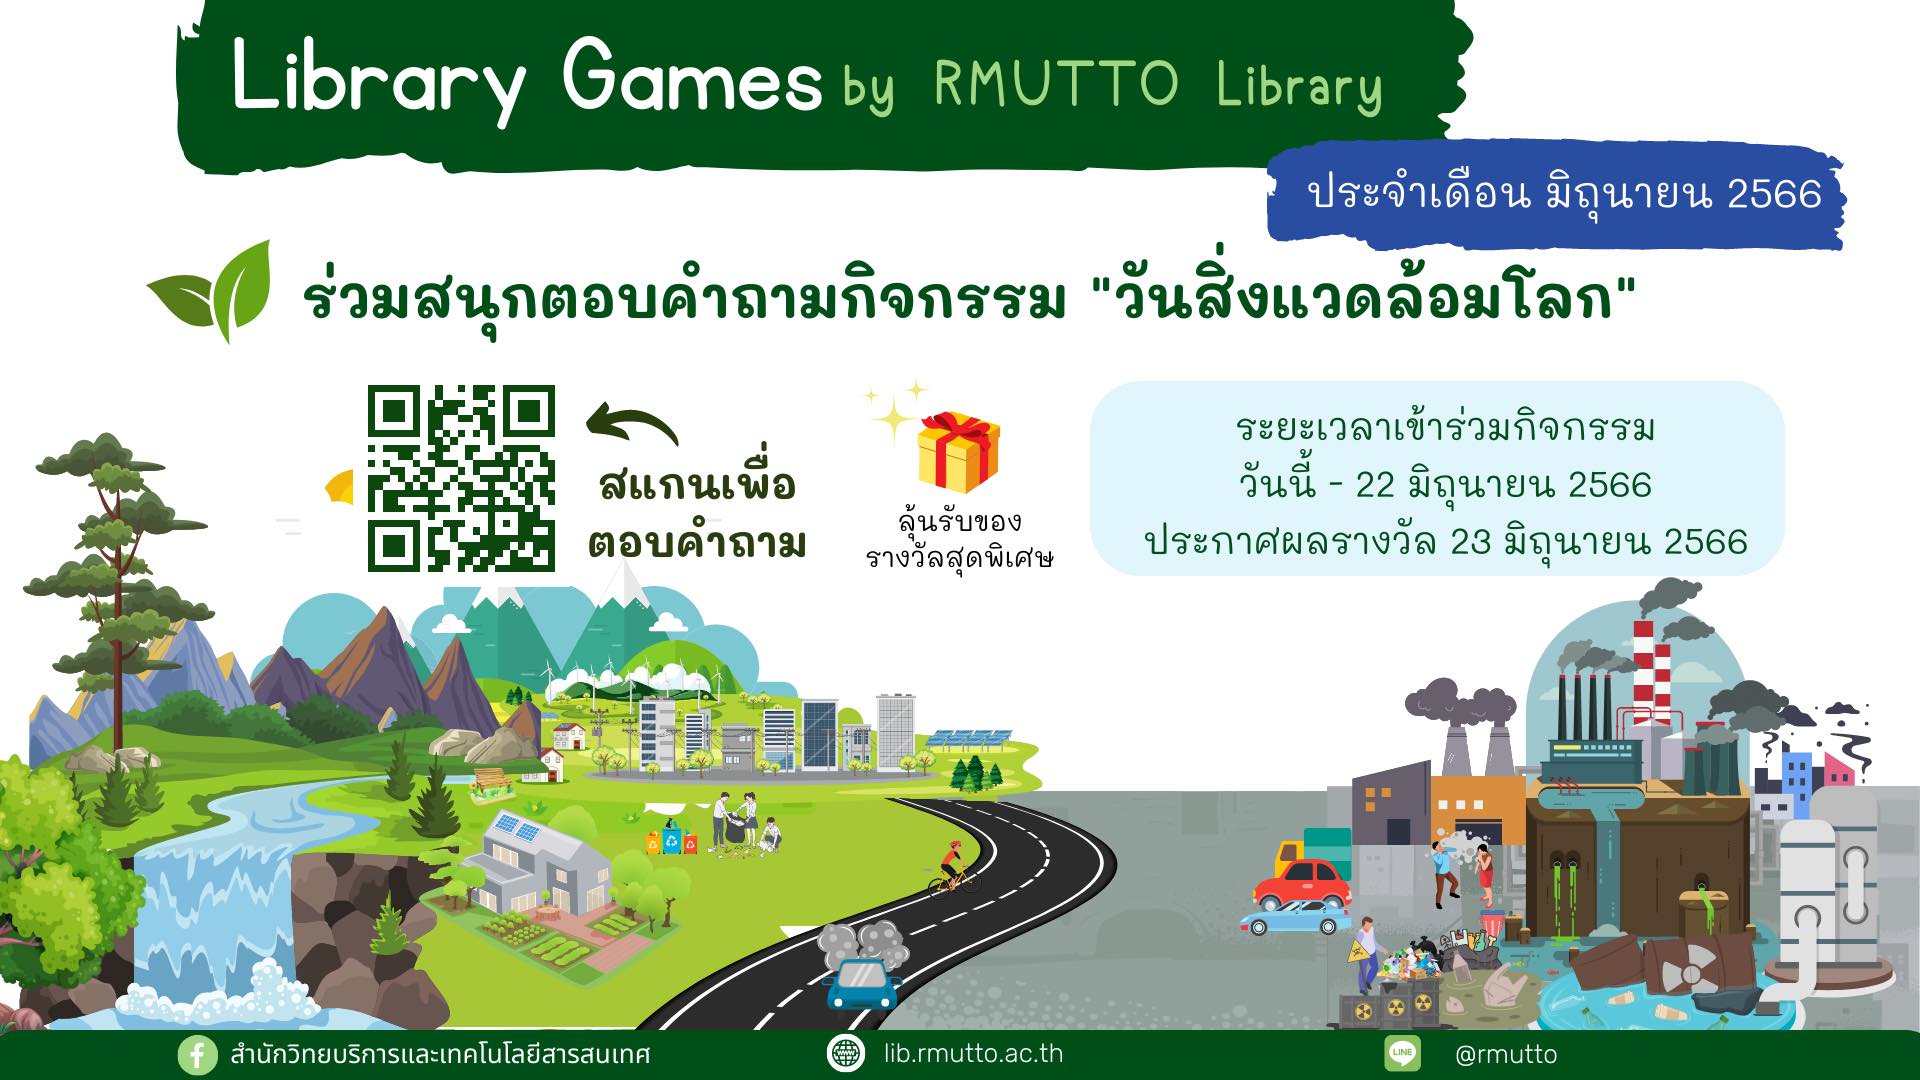 Library Game by RMUTTO Library : ประจำเดือนมิถุนายน 2566